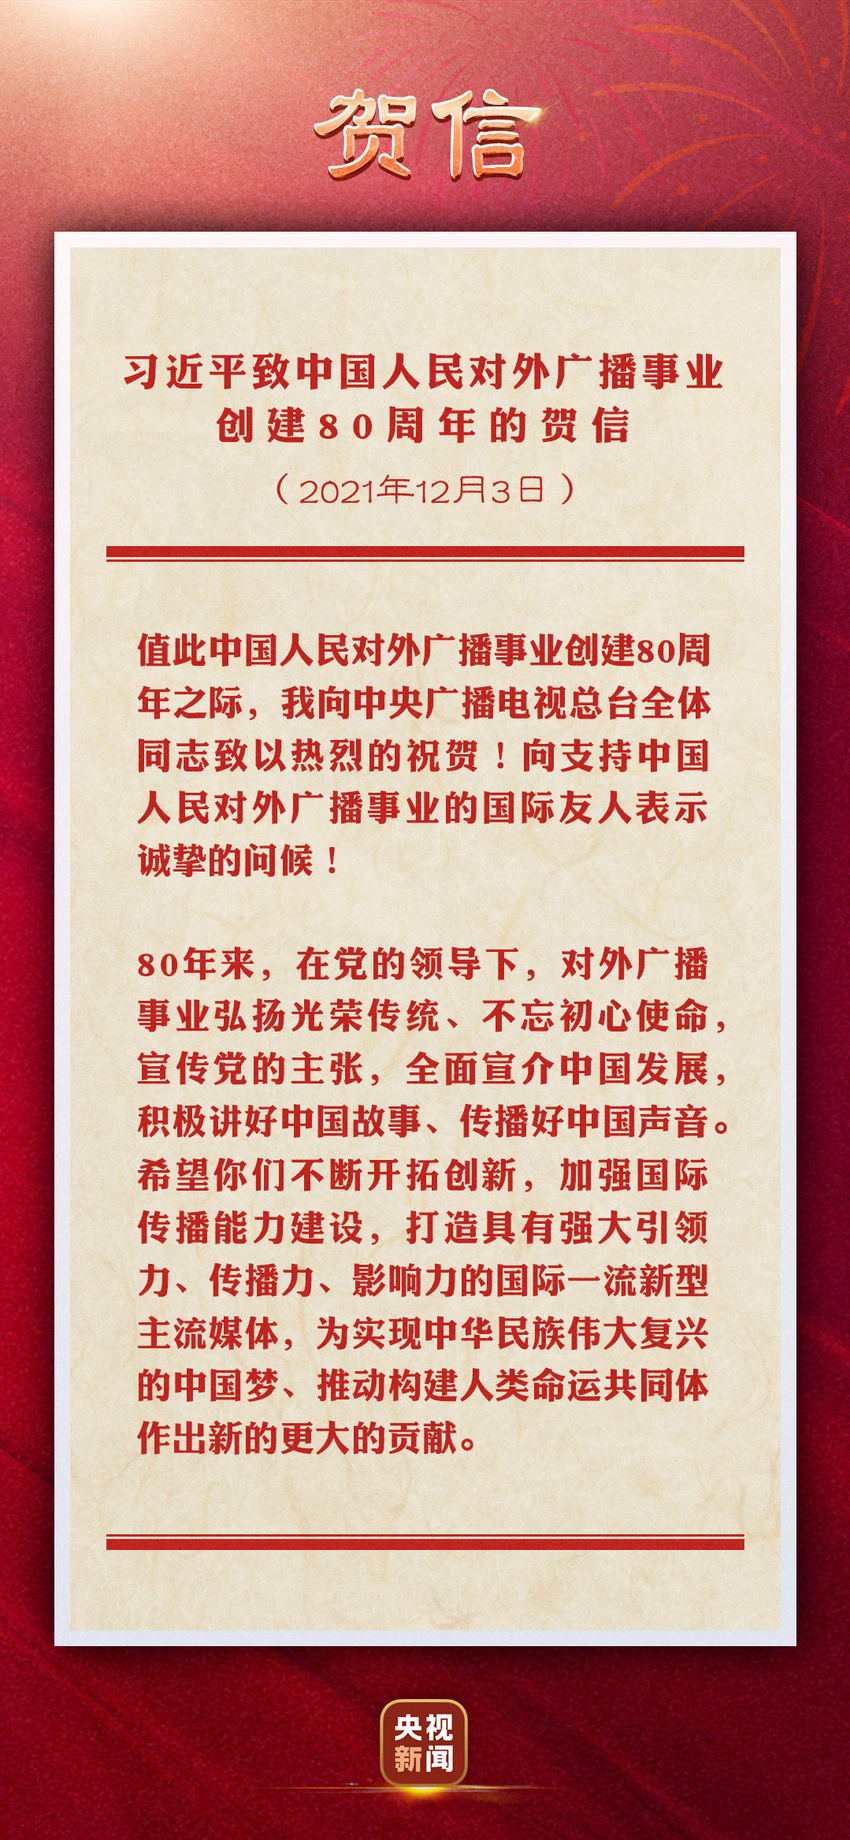 চীনের আন্তর্জাতিক বেতার অনুষ্ঠান সম্প্রচারের ৮০তম বার্ষিকীতে চীনা প্রেসিডেন্টের শুভেচ্ছা_fororder_1203-3